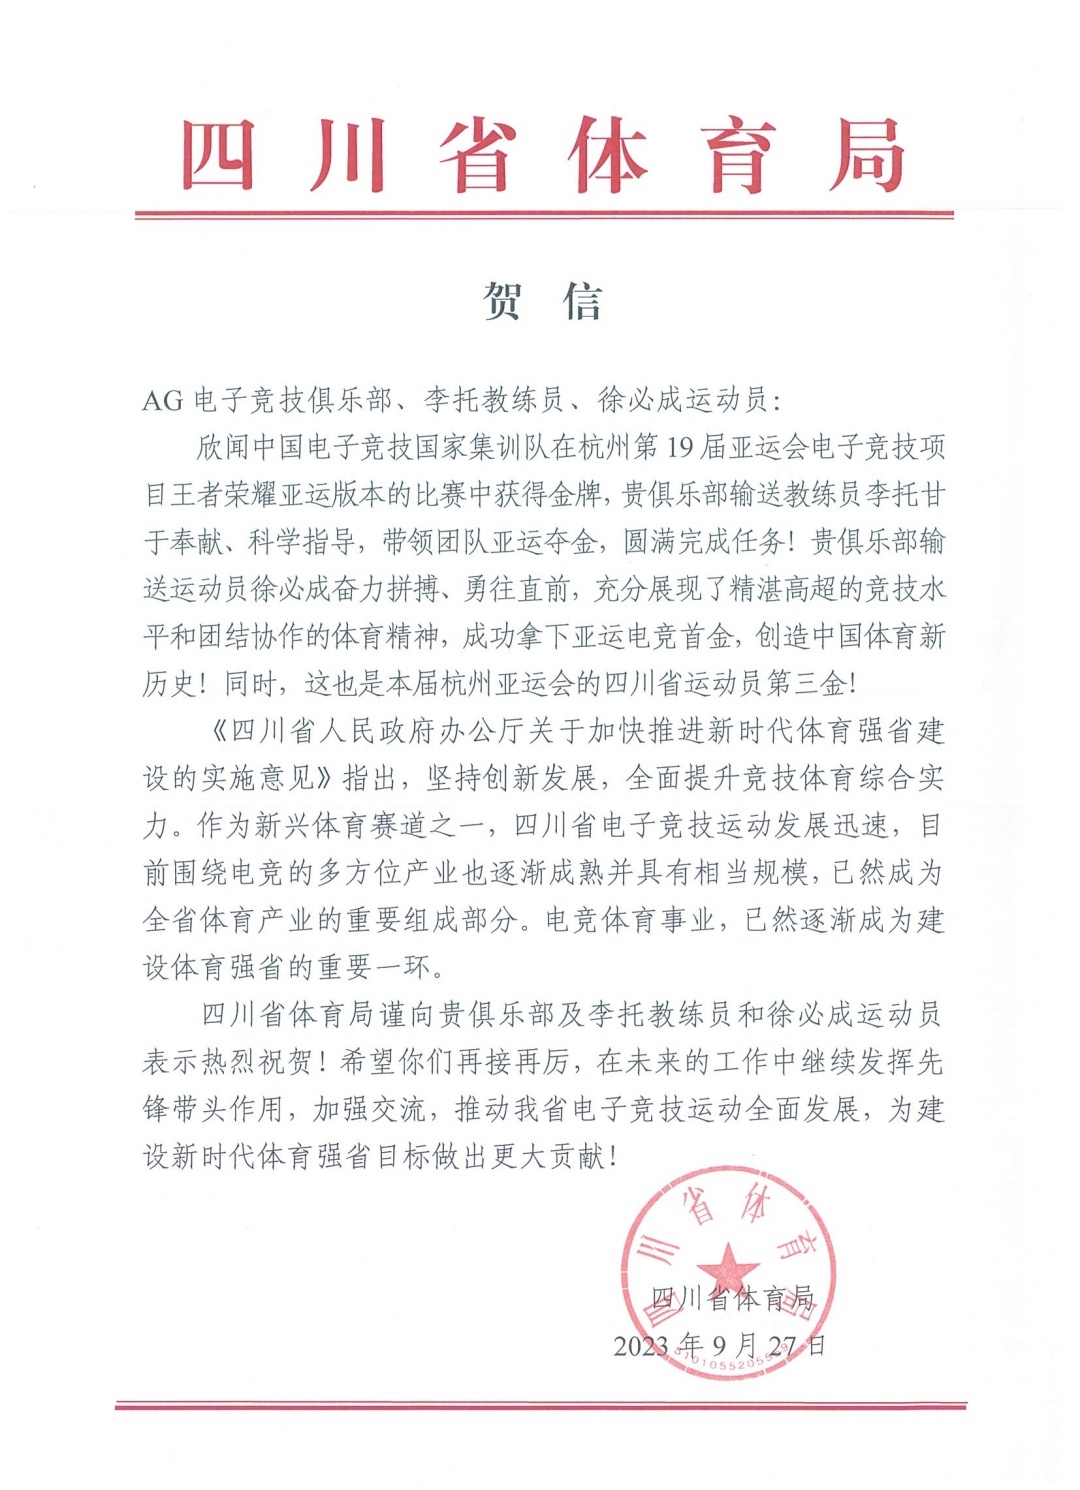 四川省体育局、成都市体育局向成都AG的王者荣耀国家队选手发去贺信